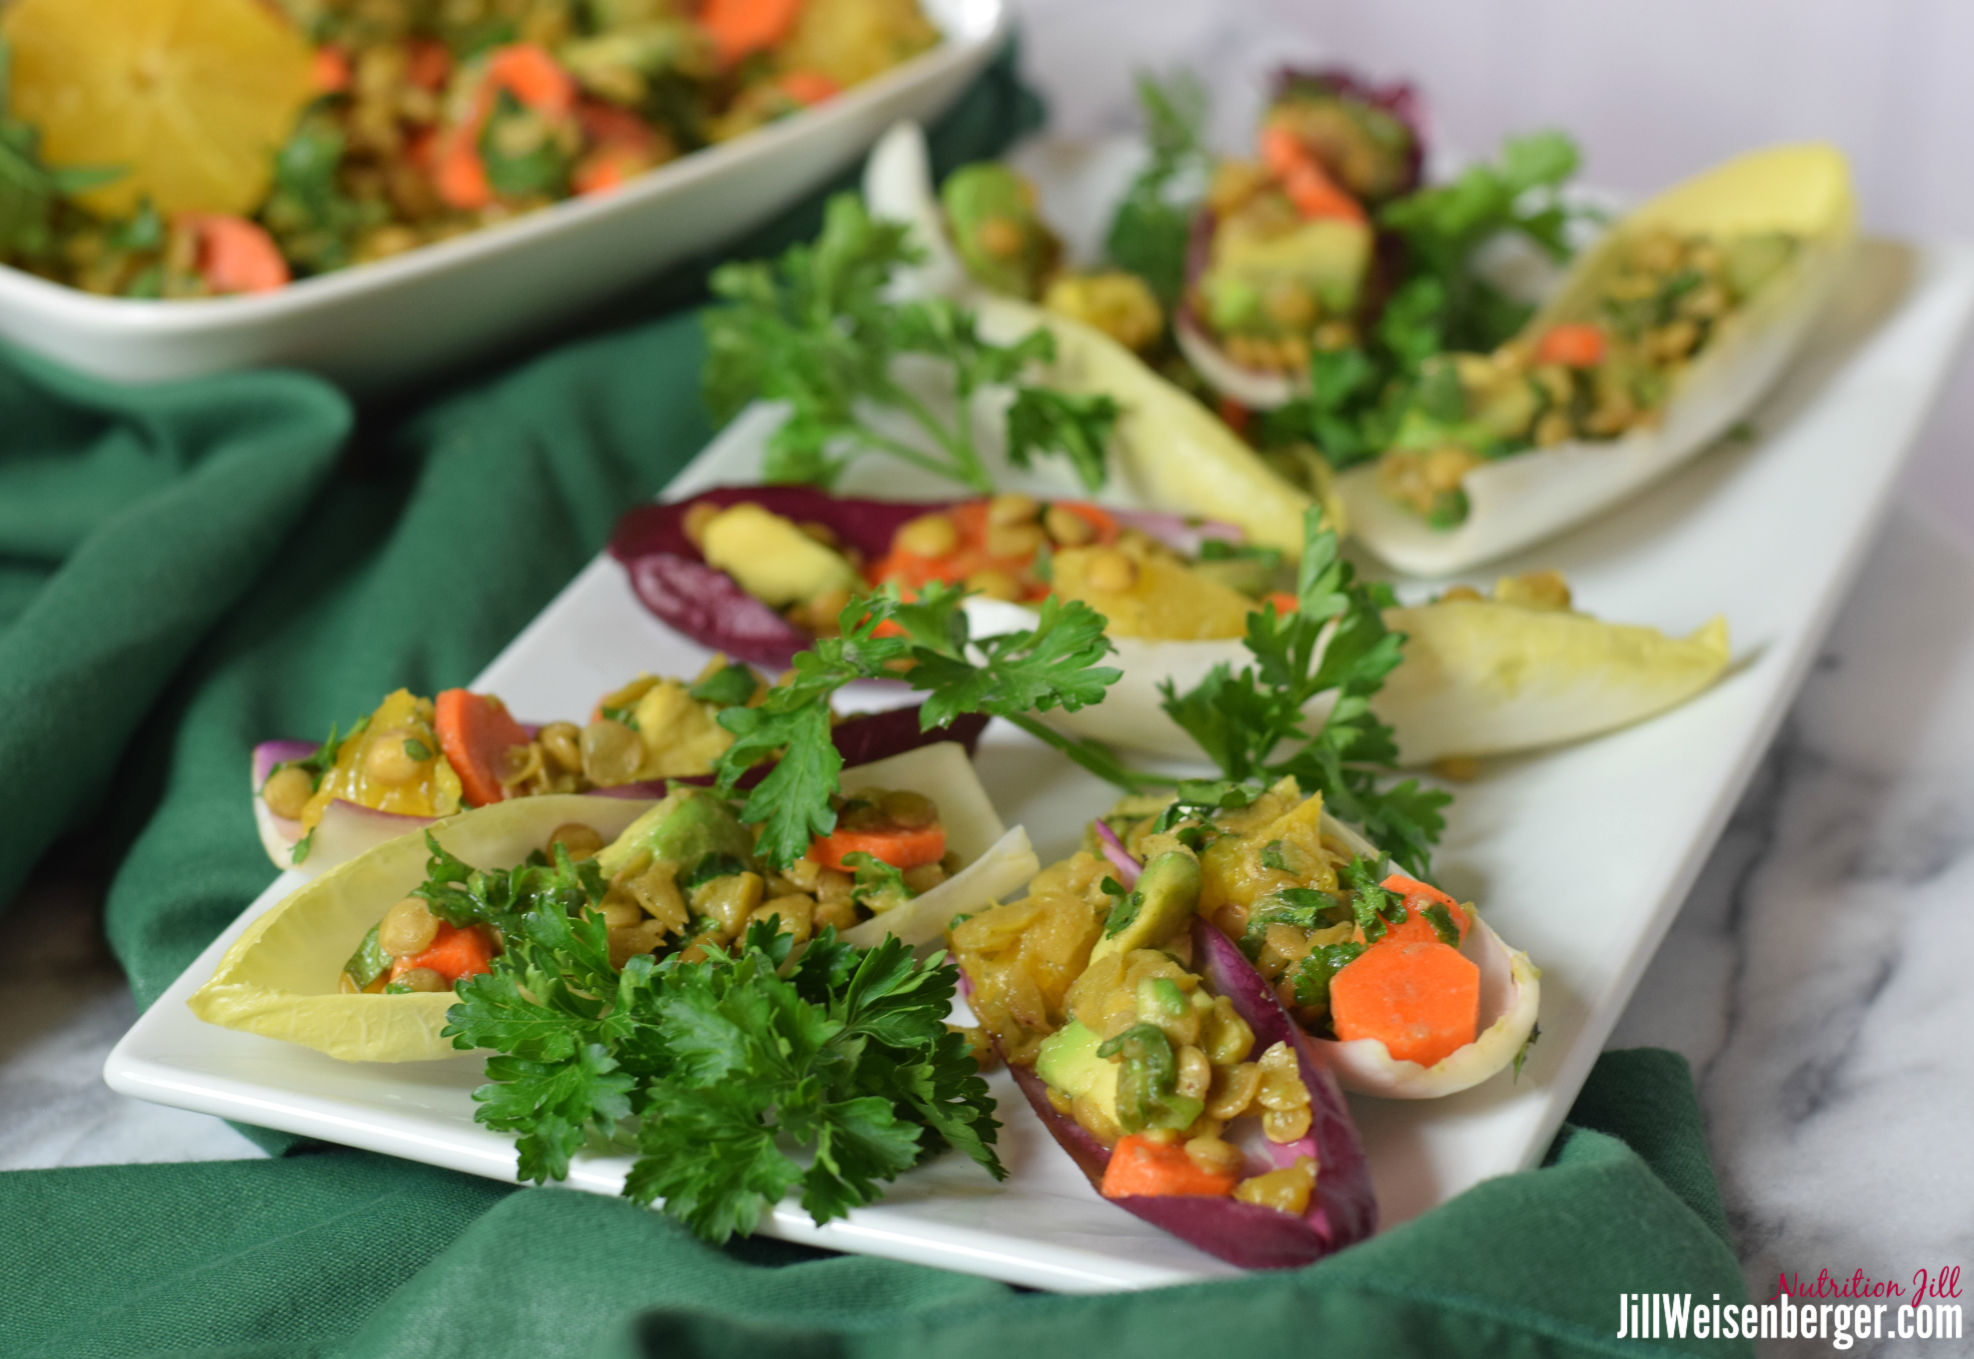 healthy lentil salad in endive leaves